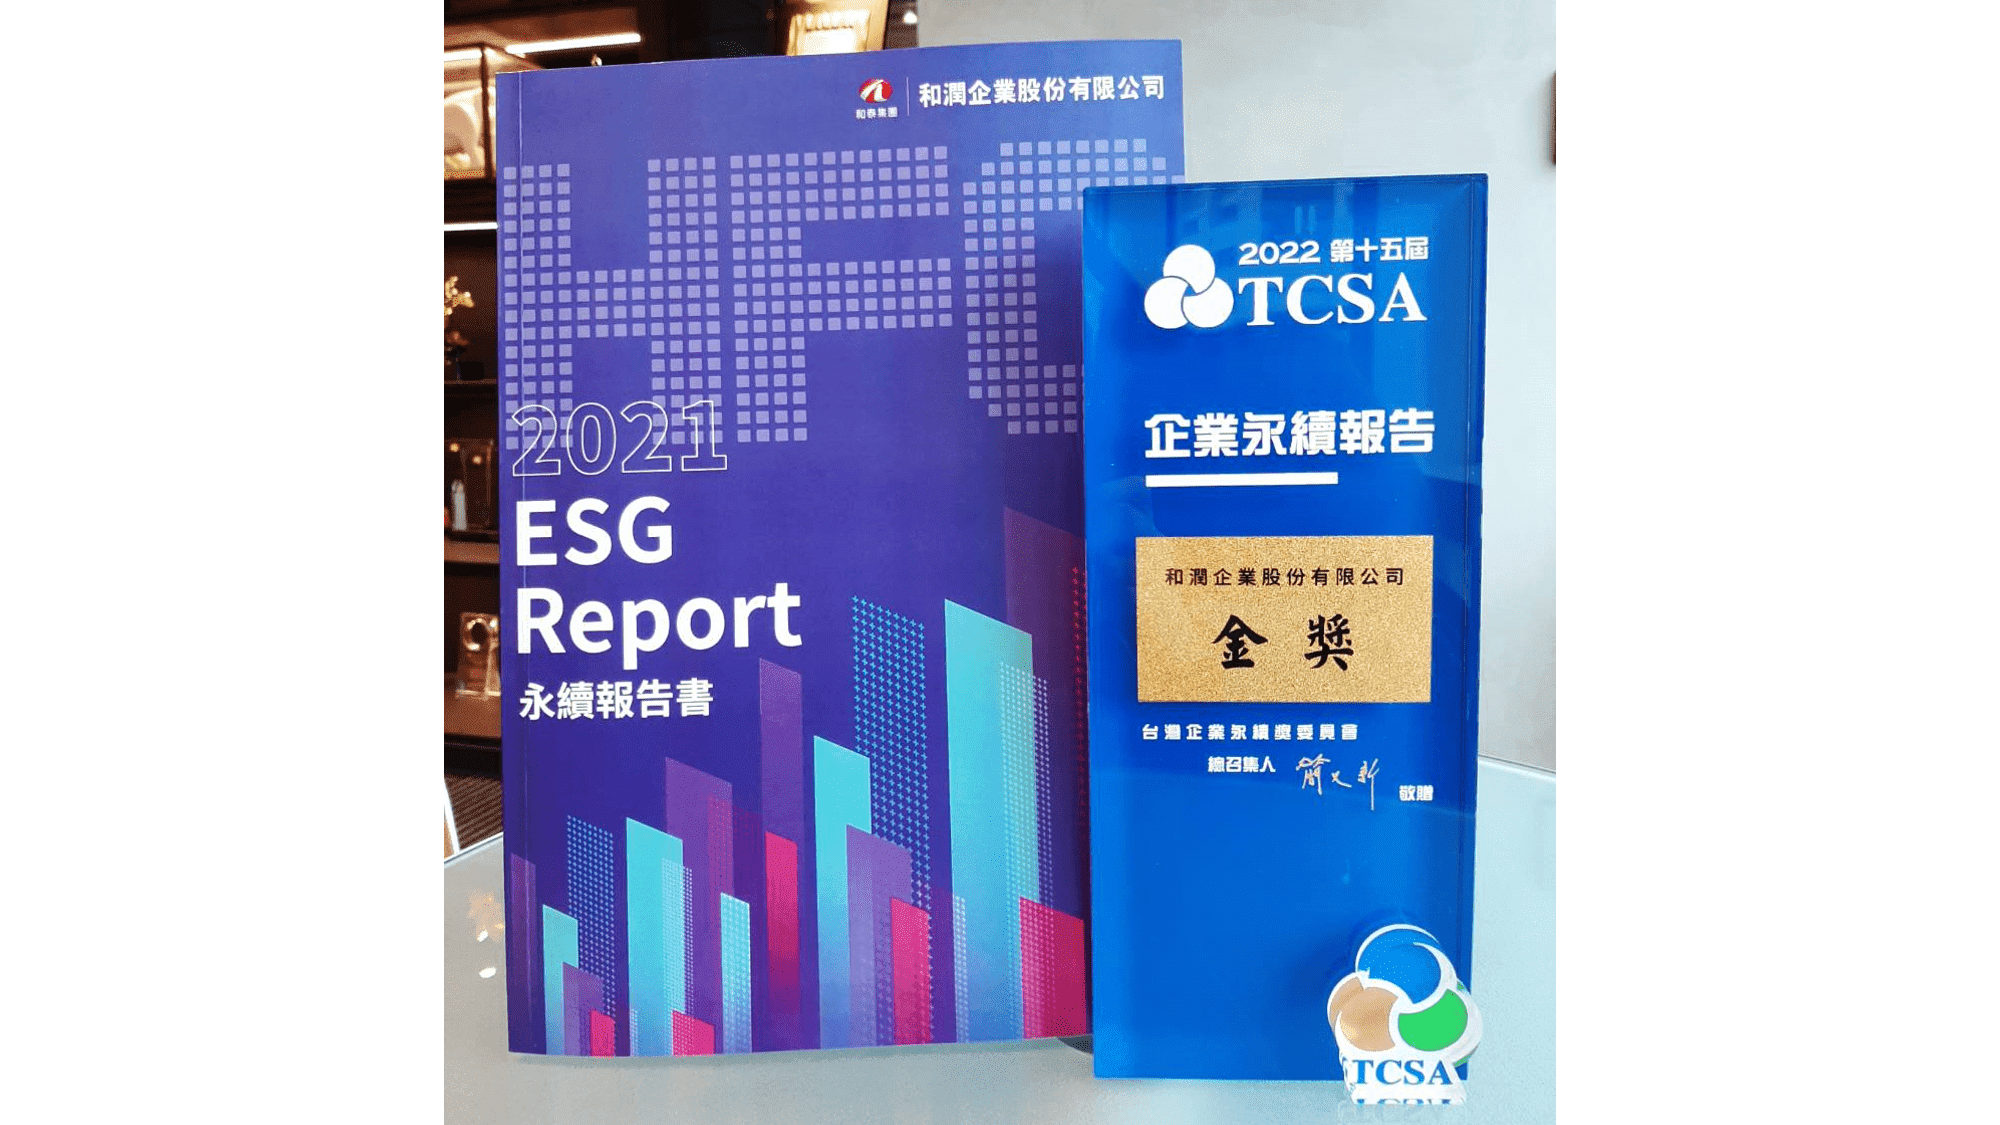 賀！和潤企業連兩年榮獲「TCSA台灣企業永續獎」